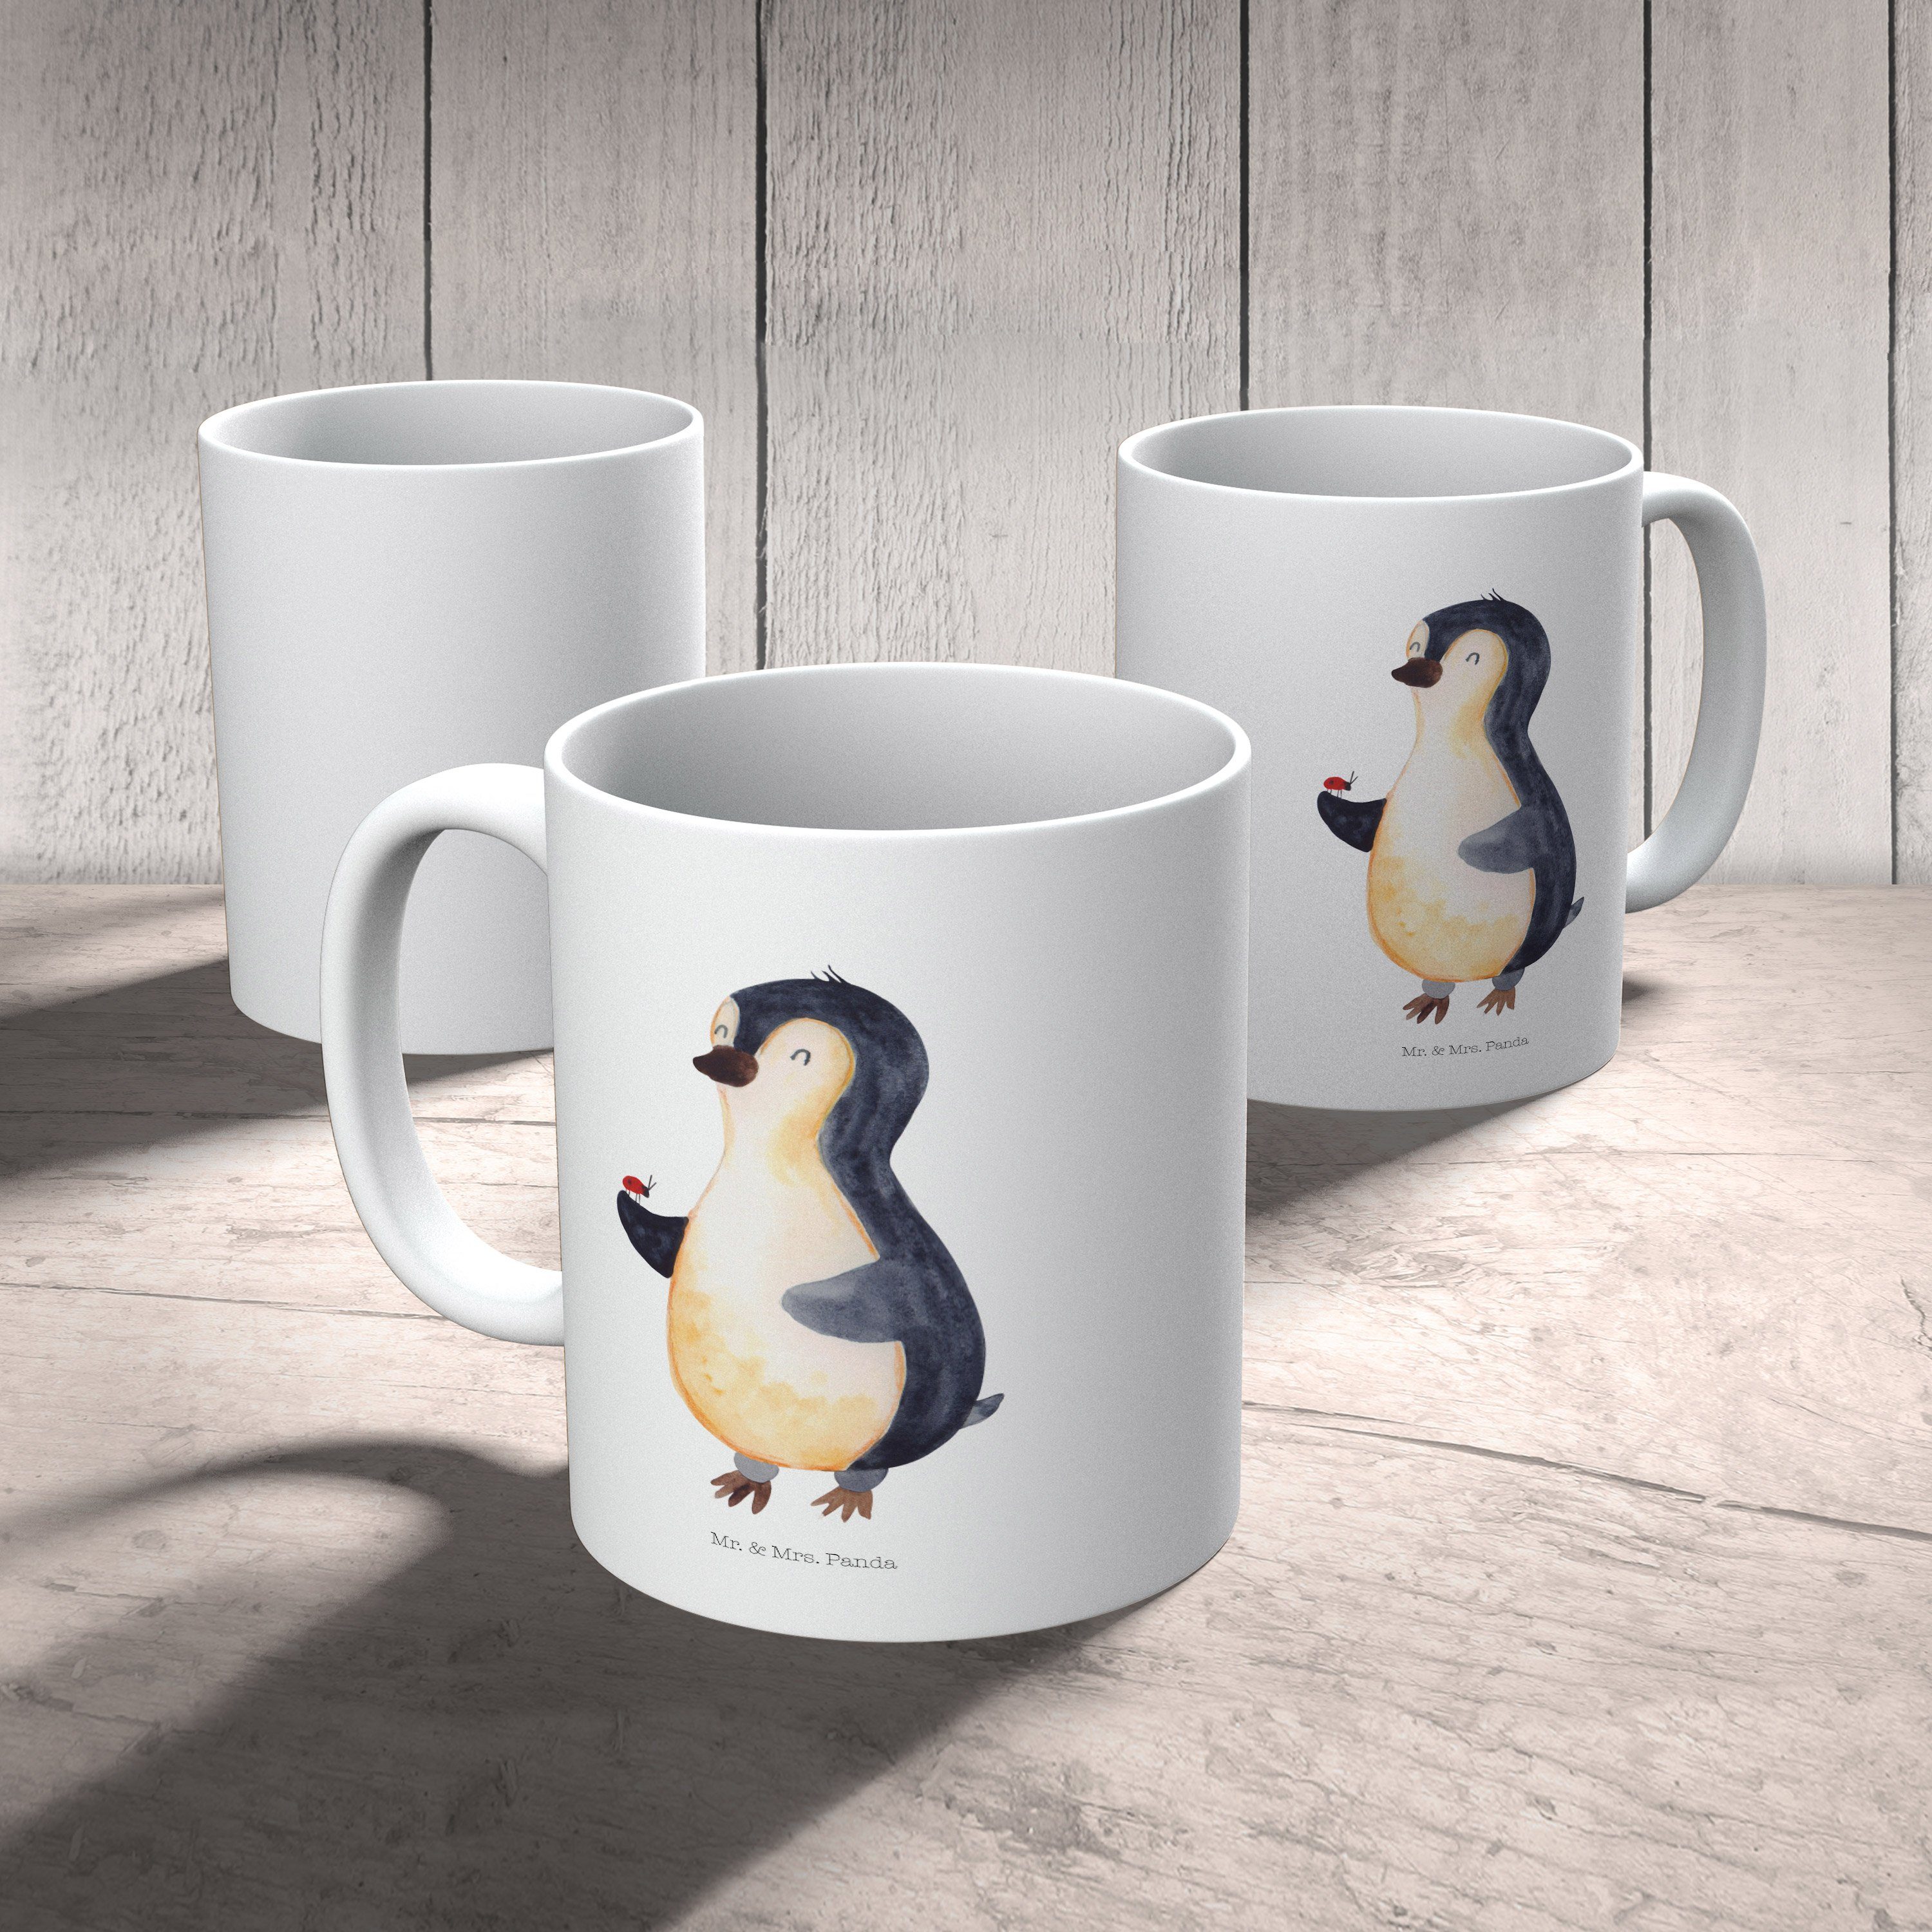 Mr. & Mrs. Panda - Keramik Tasse - Weiß Geschenk, Pinguin aufmerksam, Tasse, Teebecher, Marienkäfer